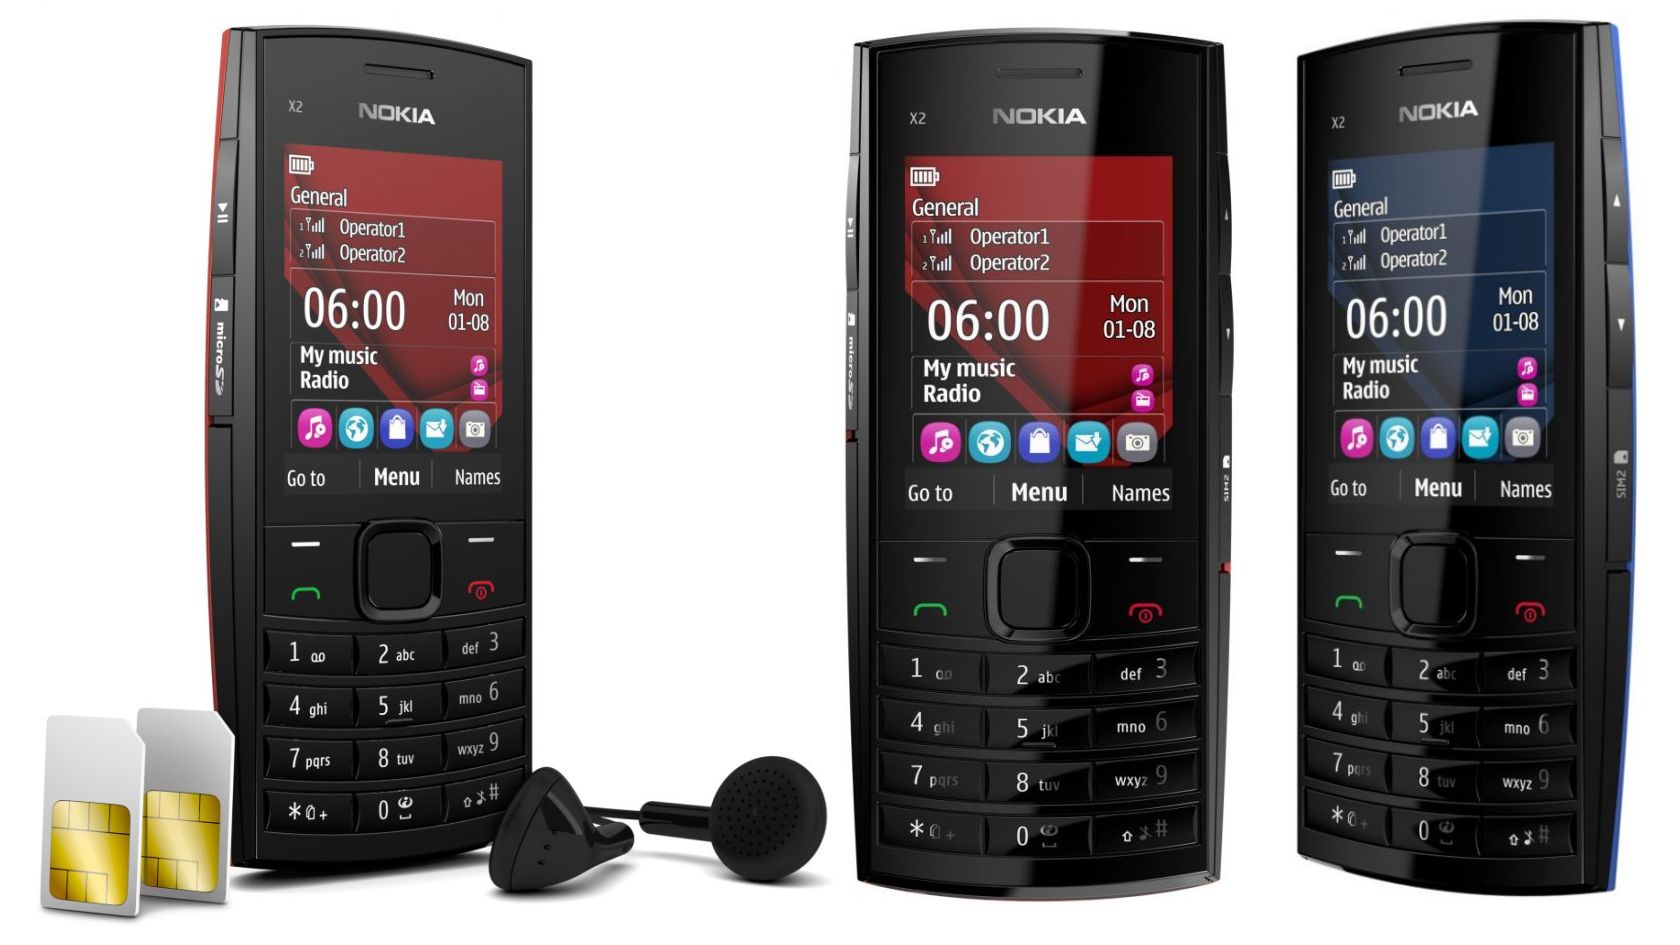 صور Nokia X2-02 - 2 line